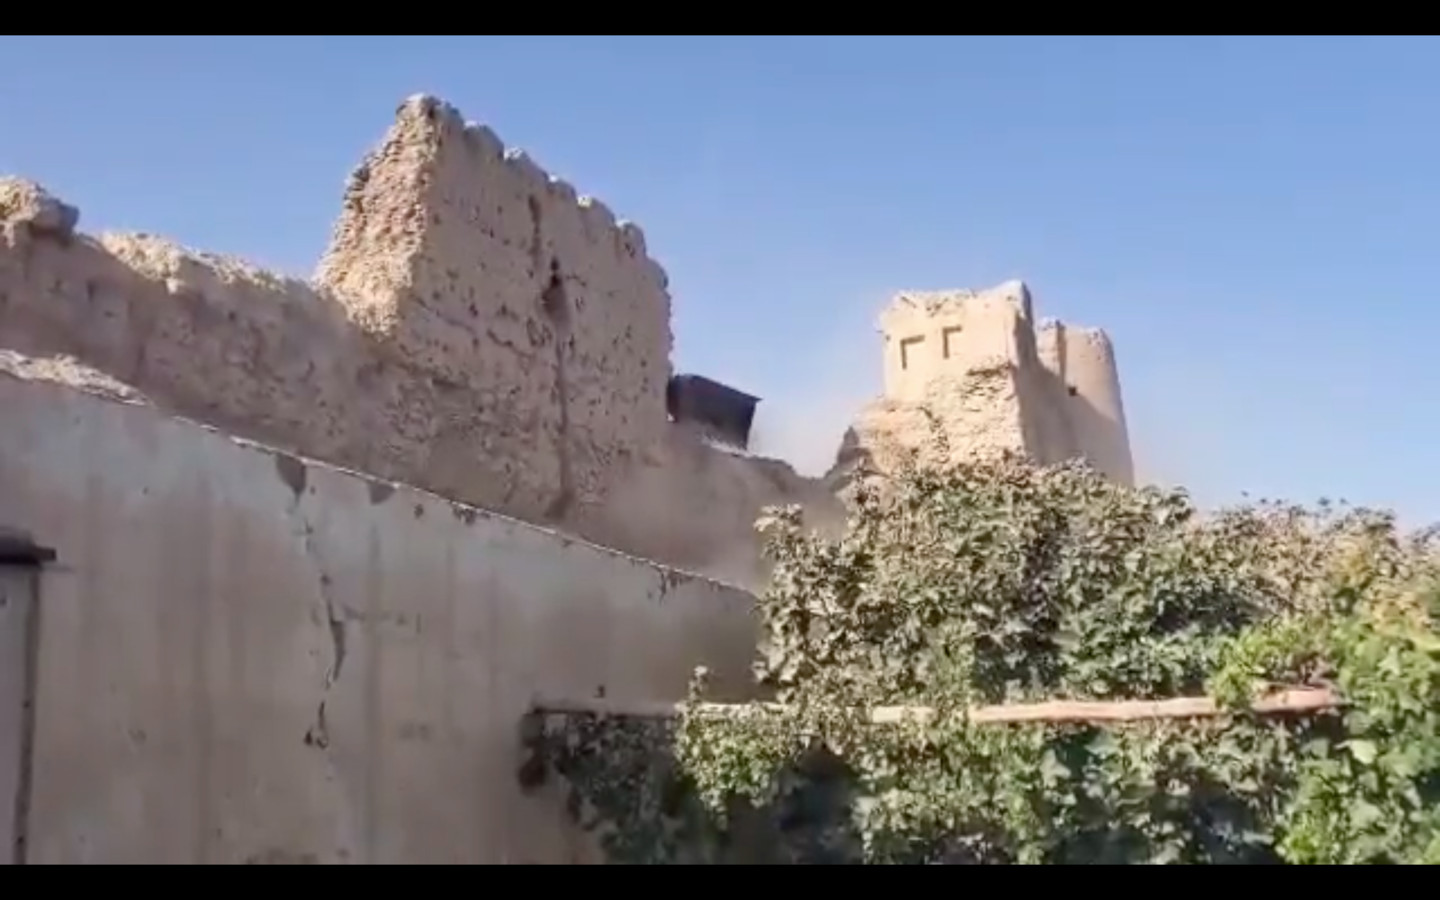 Des images vidéo de la forteresse publiées cette semaine montrent la pelle d'une excavatrice entre les deux tours.